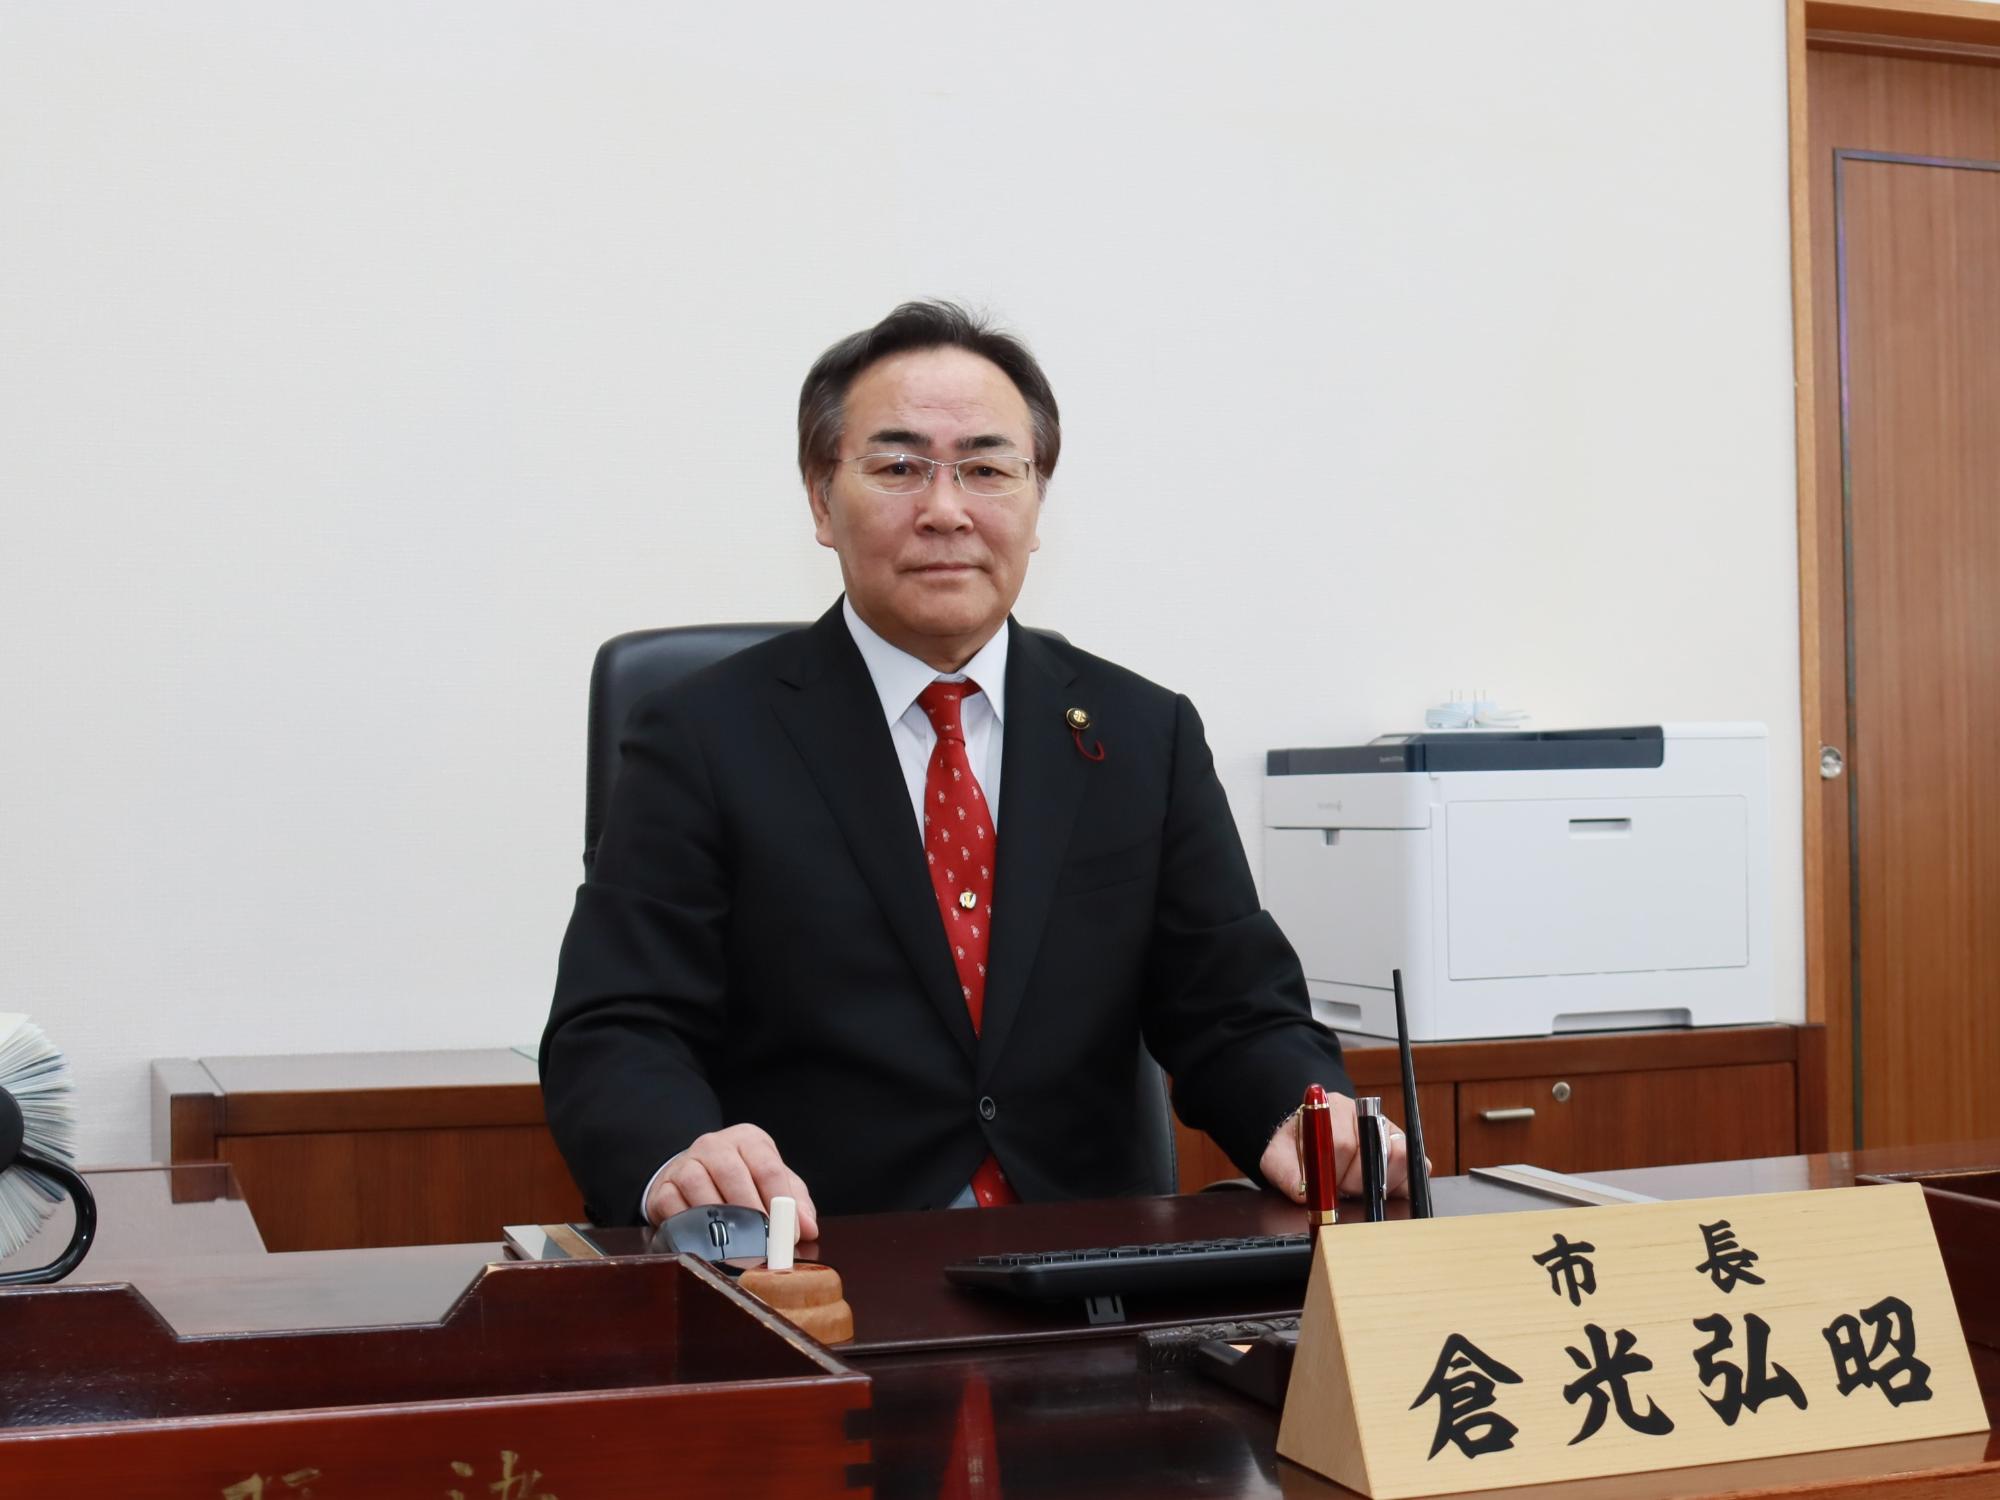 市長デスクに置かれた卓上名札の前で椅子に座っている倉光弘昭市長の写真